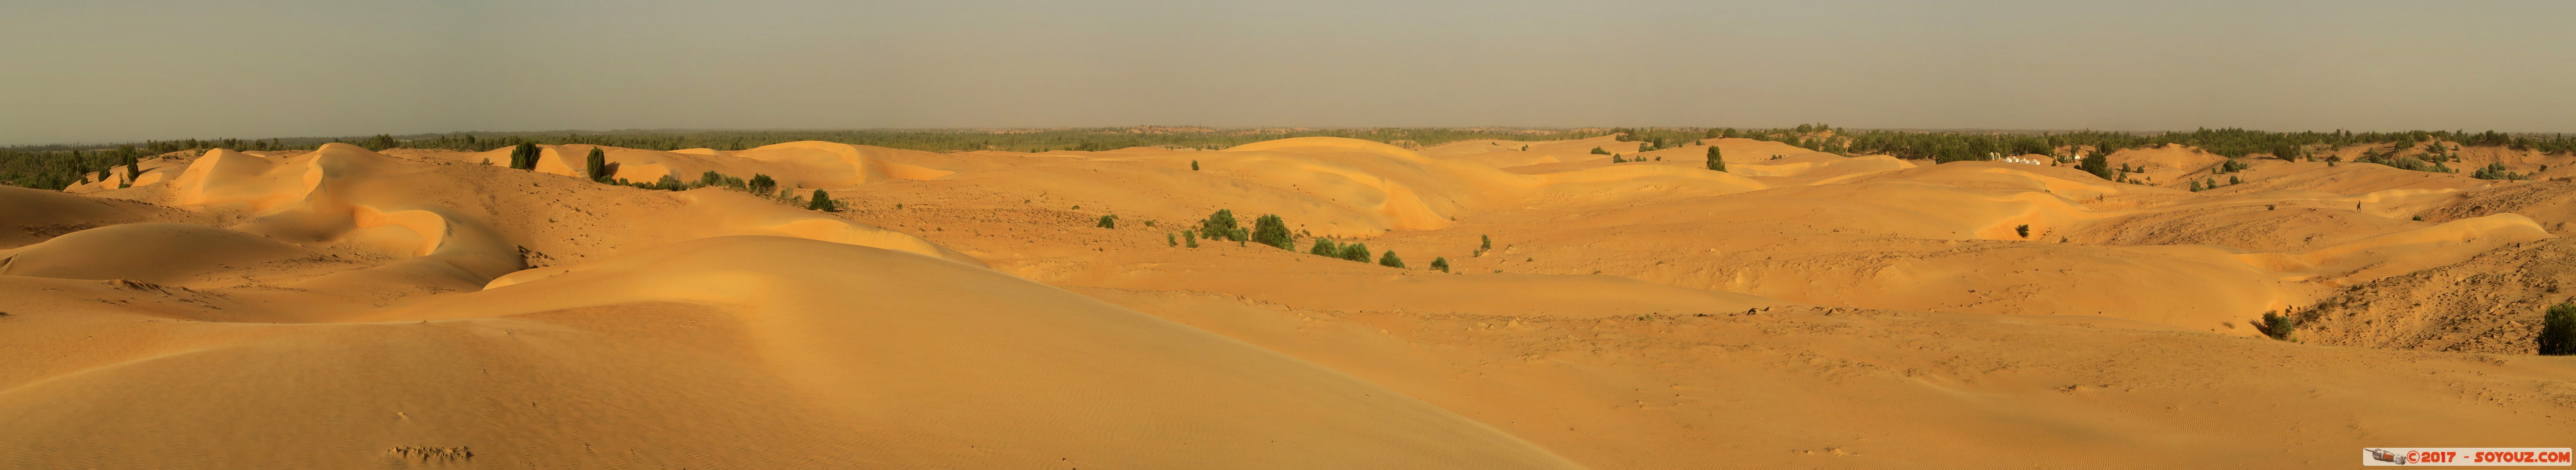 Desert de Lompoul - Panorama
Mots-clés: geo:lat=15.46102217 geo:lon=-16.69058204 geotagged SEN Senegal Thiès Tioukougne Peul Désert de Lompoul Desert panorama